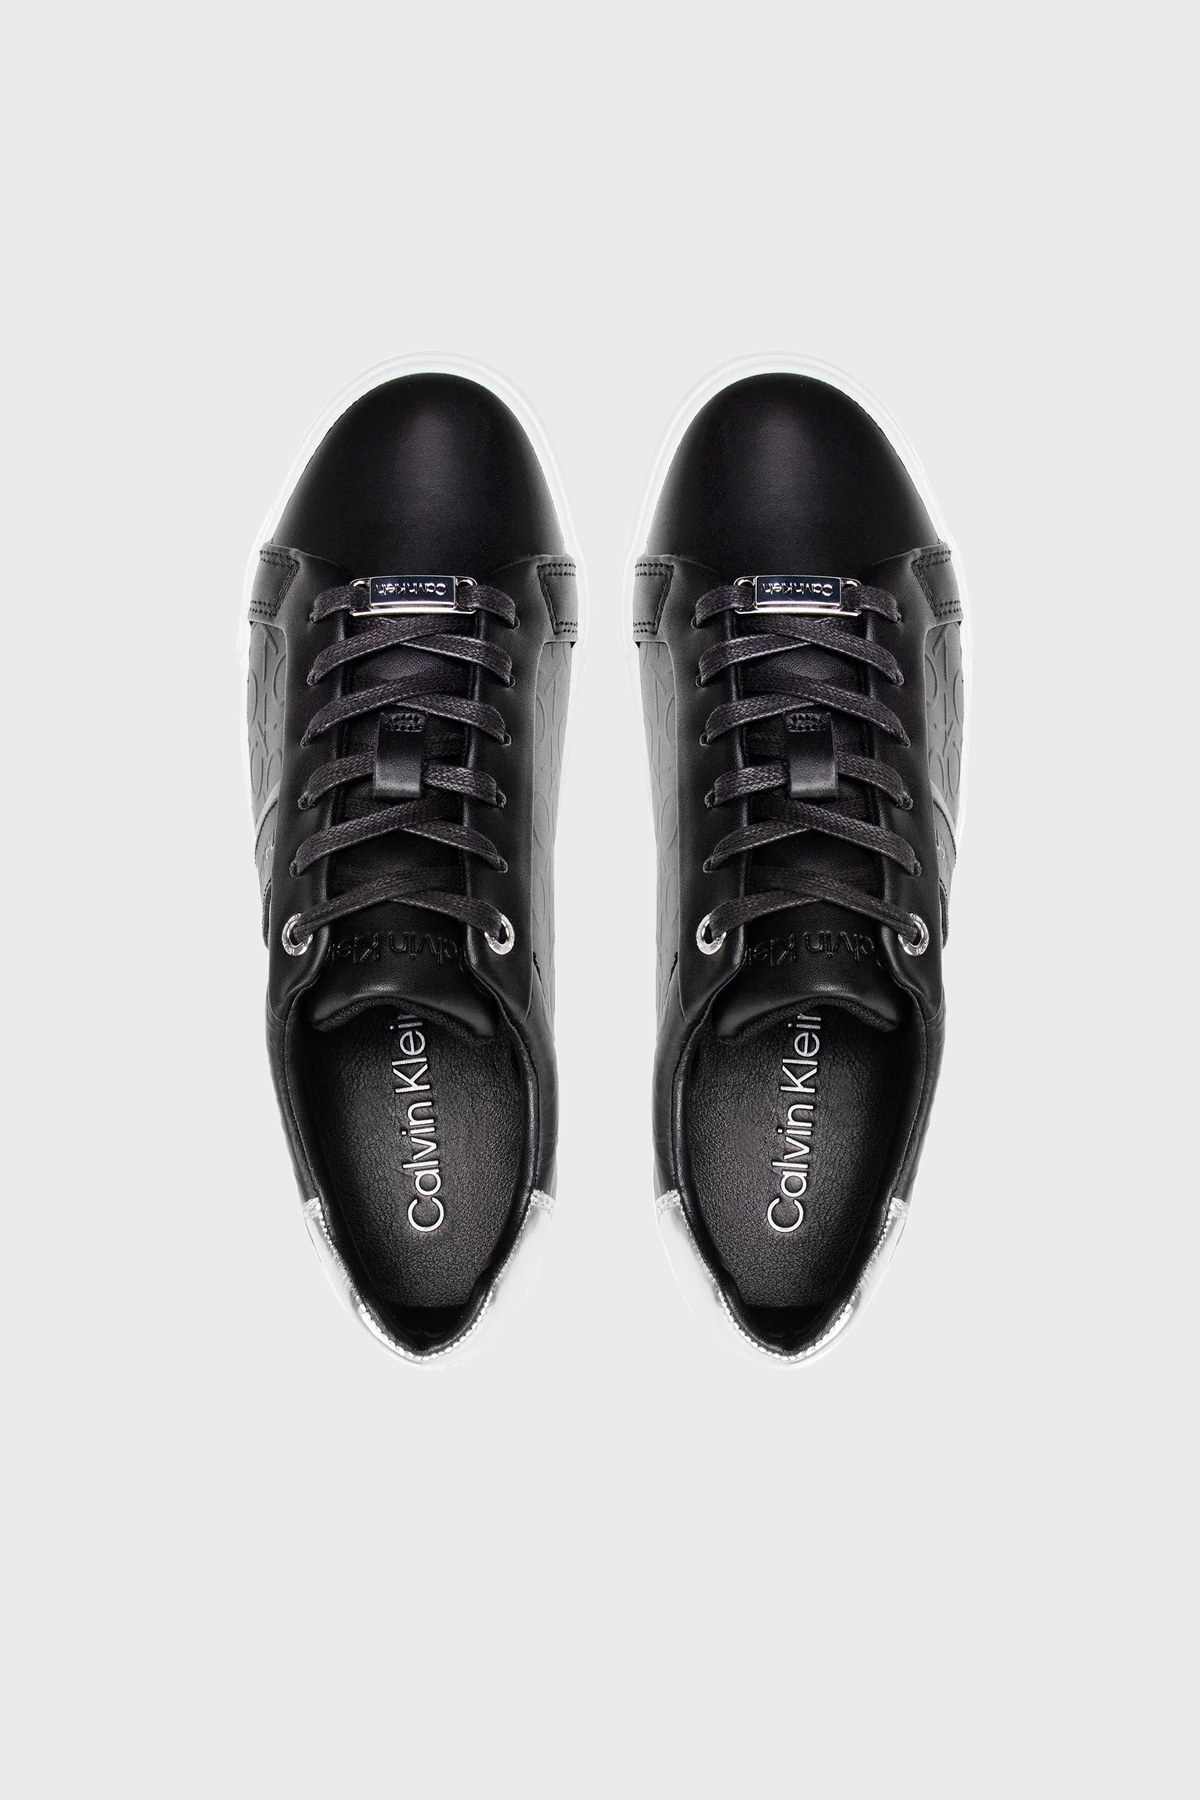 Calvin Klein Hakiki Deri Sneaker Bayan Ayakkabı HW0HW00870 0GP SİYAH-GÜMÜŞ